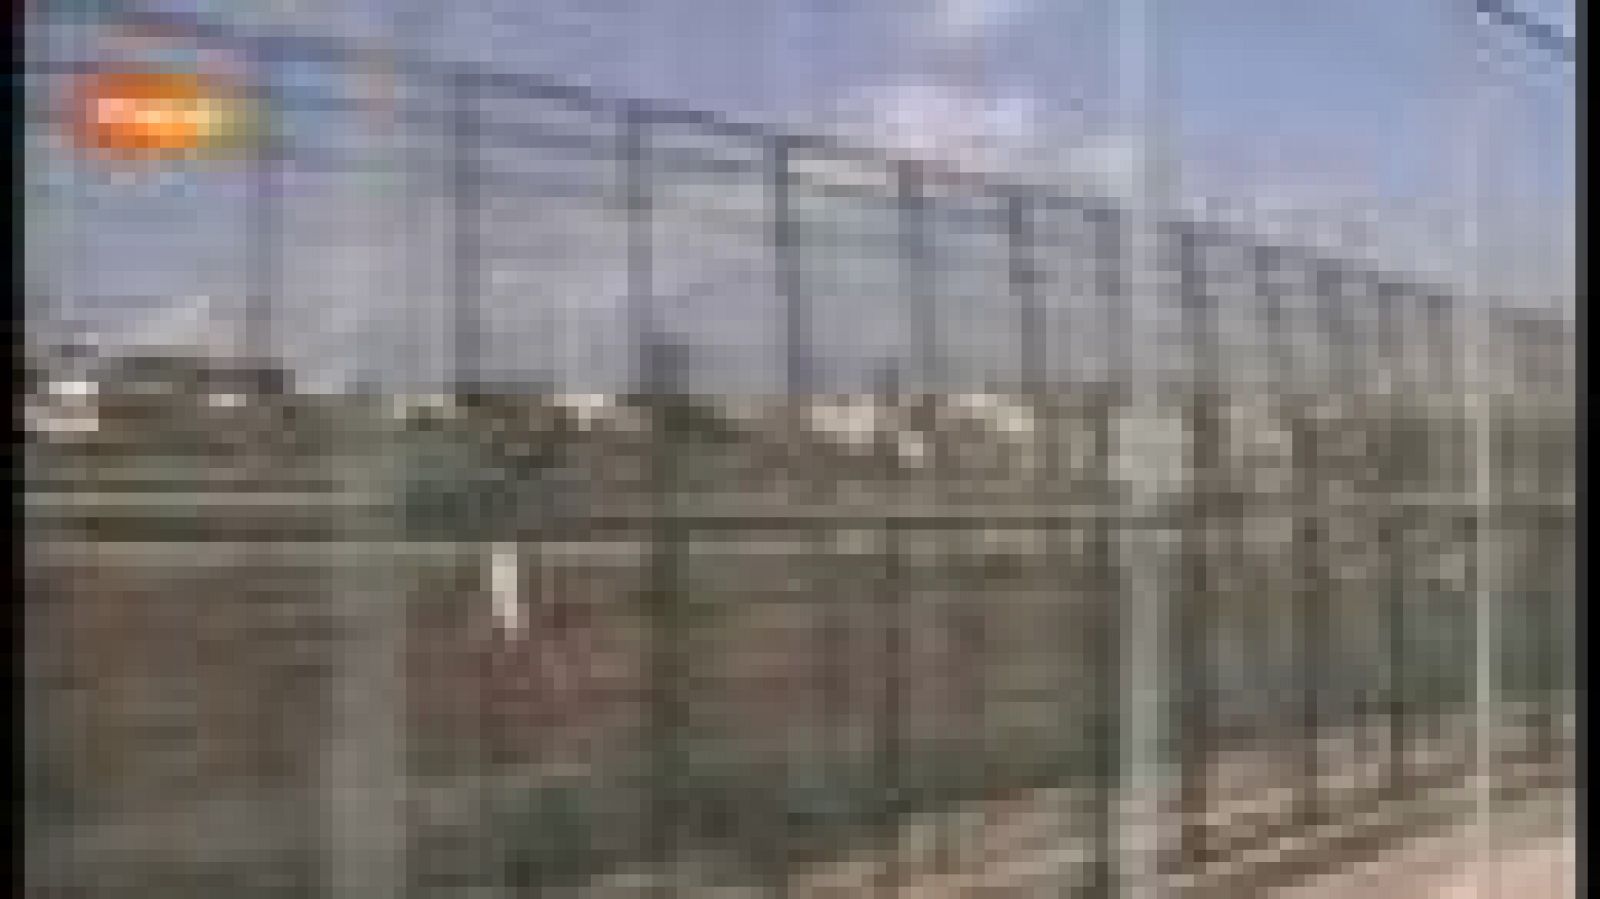 El derecho de asilo en Melilla, una trampa para muchos inmigrantes